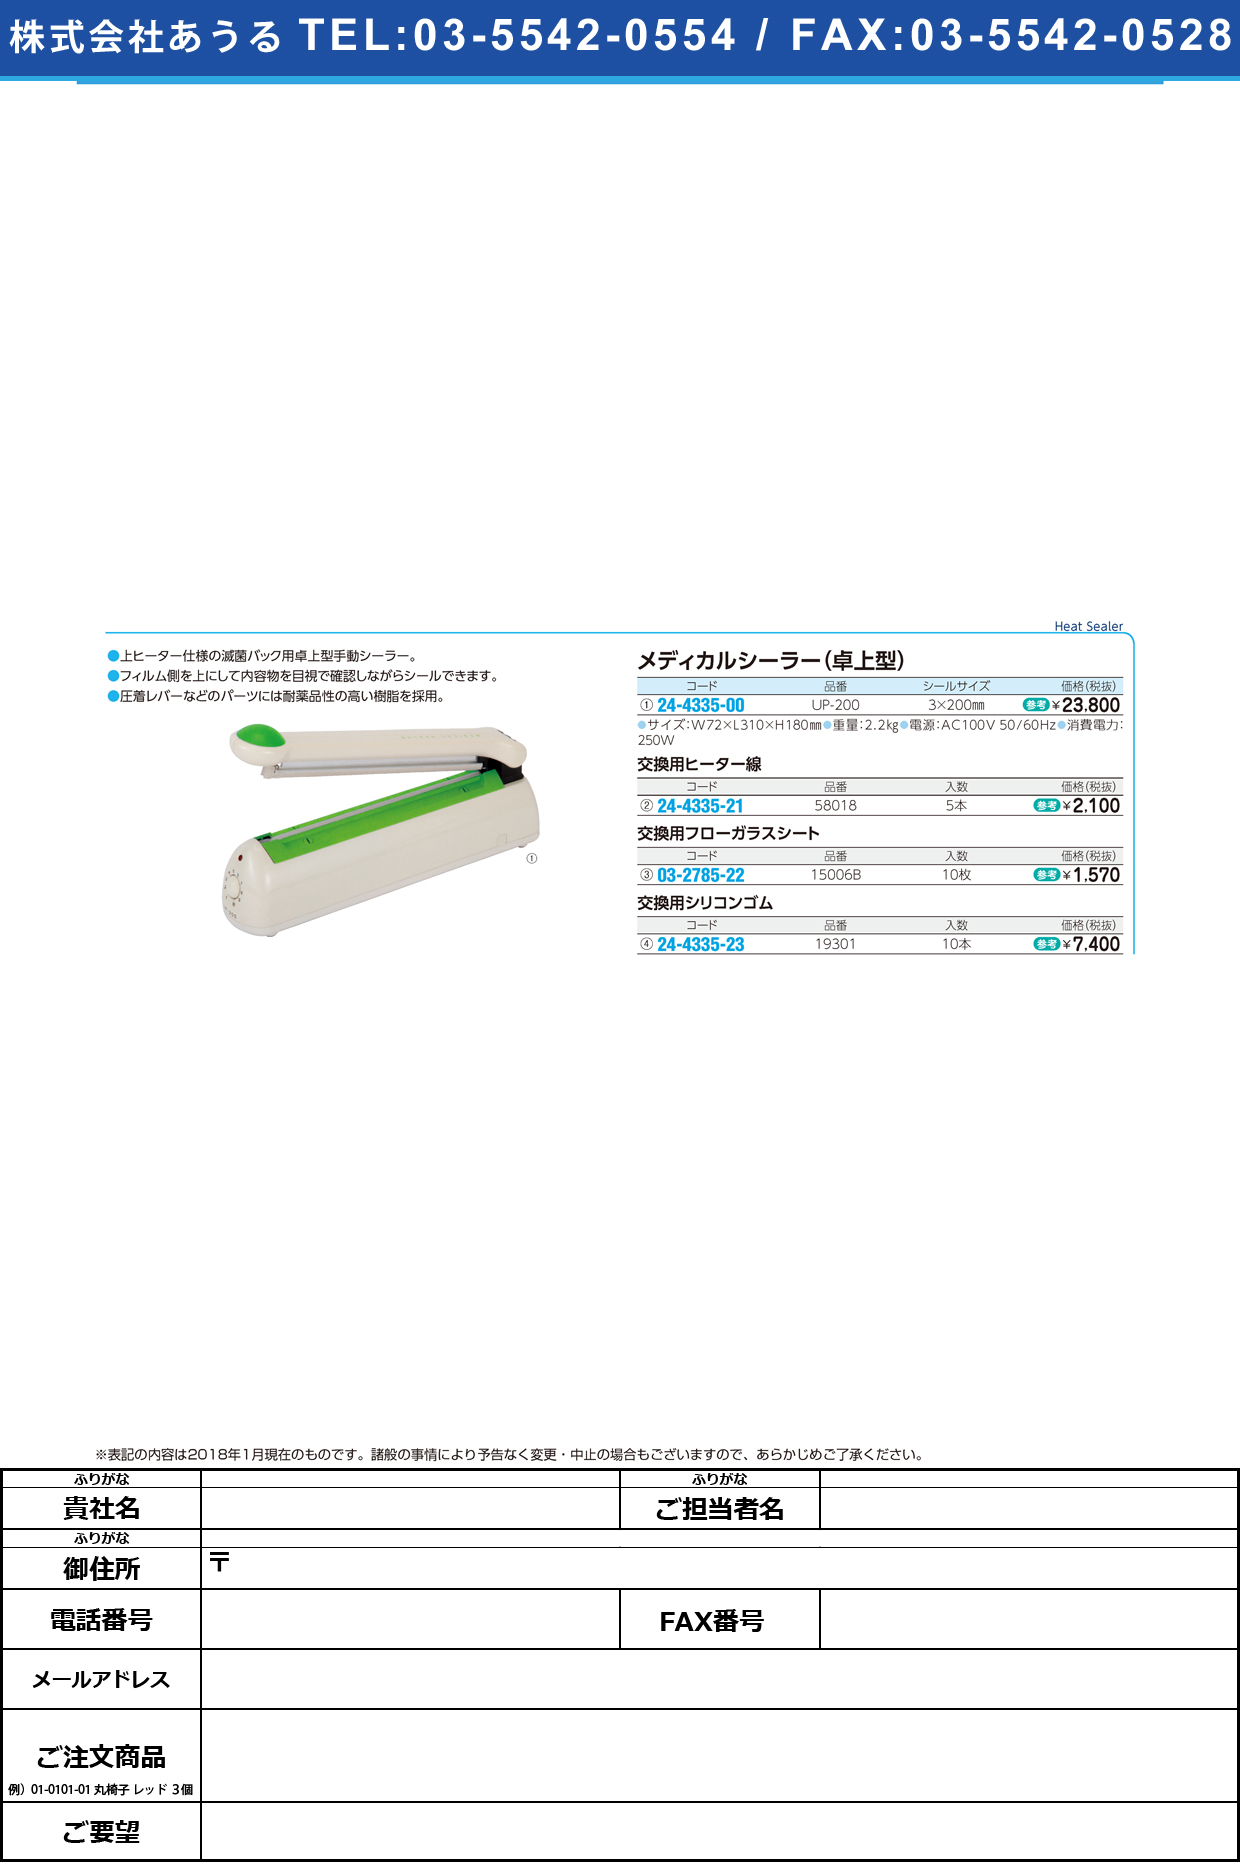 (24-4335-00)メディカルシーラー（卓上型） UP-200 ﾒﾃﾞｨｶﾙｼｰﾗｰ(ﾀｸｼﾞｮｳｶﾞﾀ【1台単位】【2019年カタログ商品】